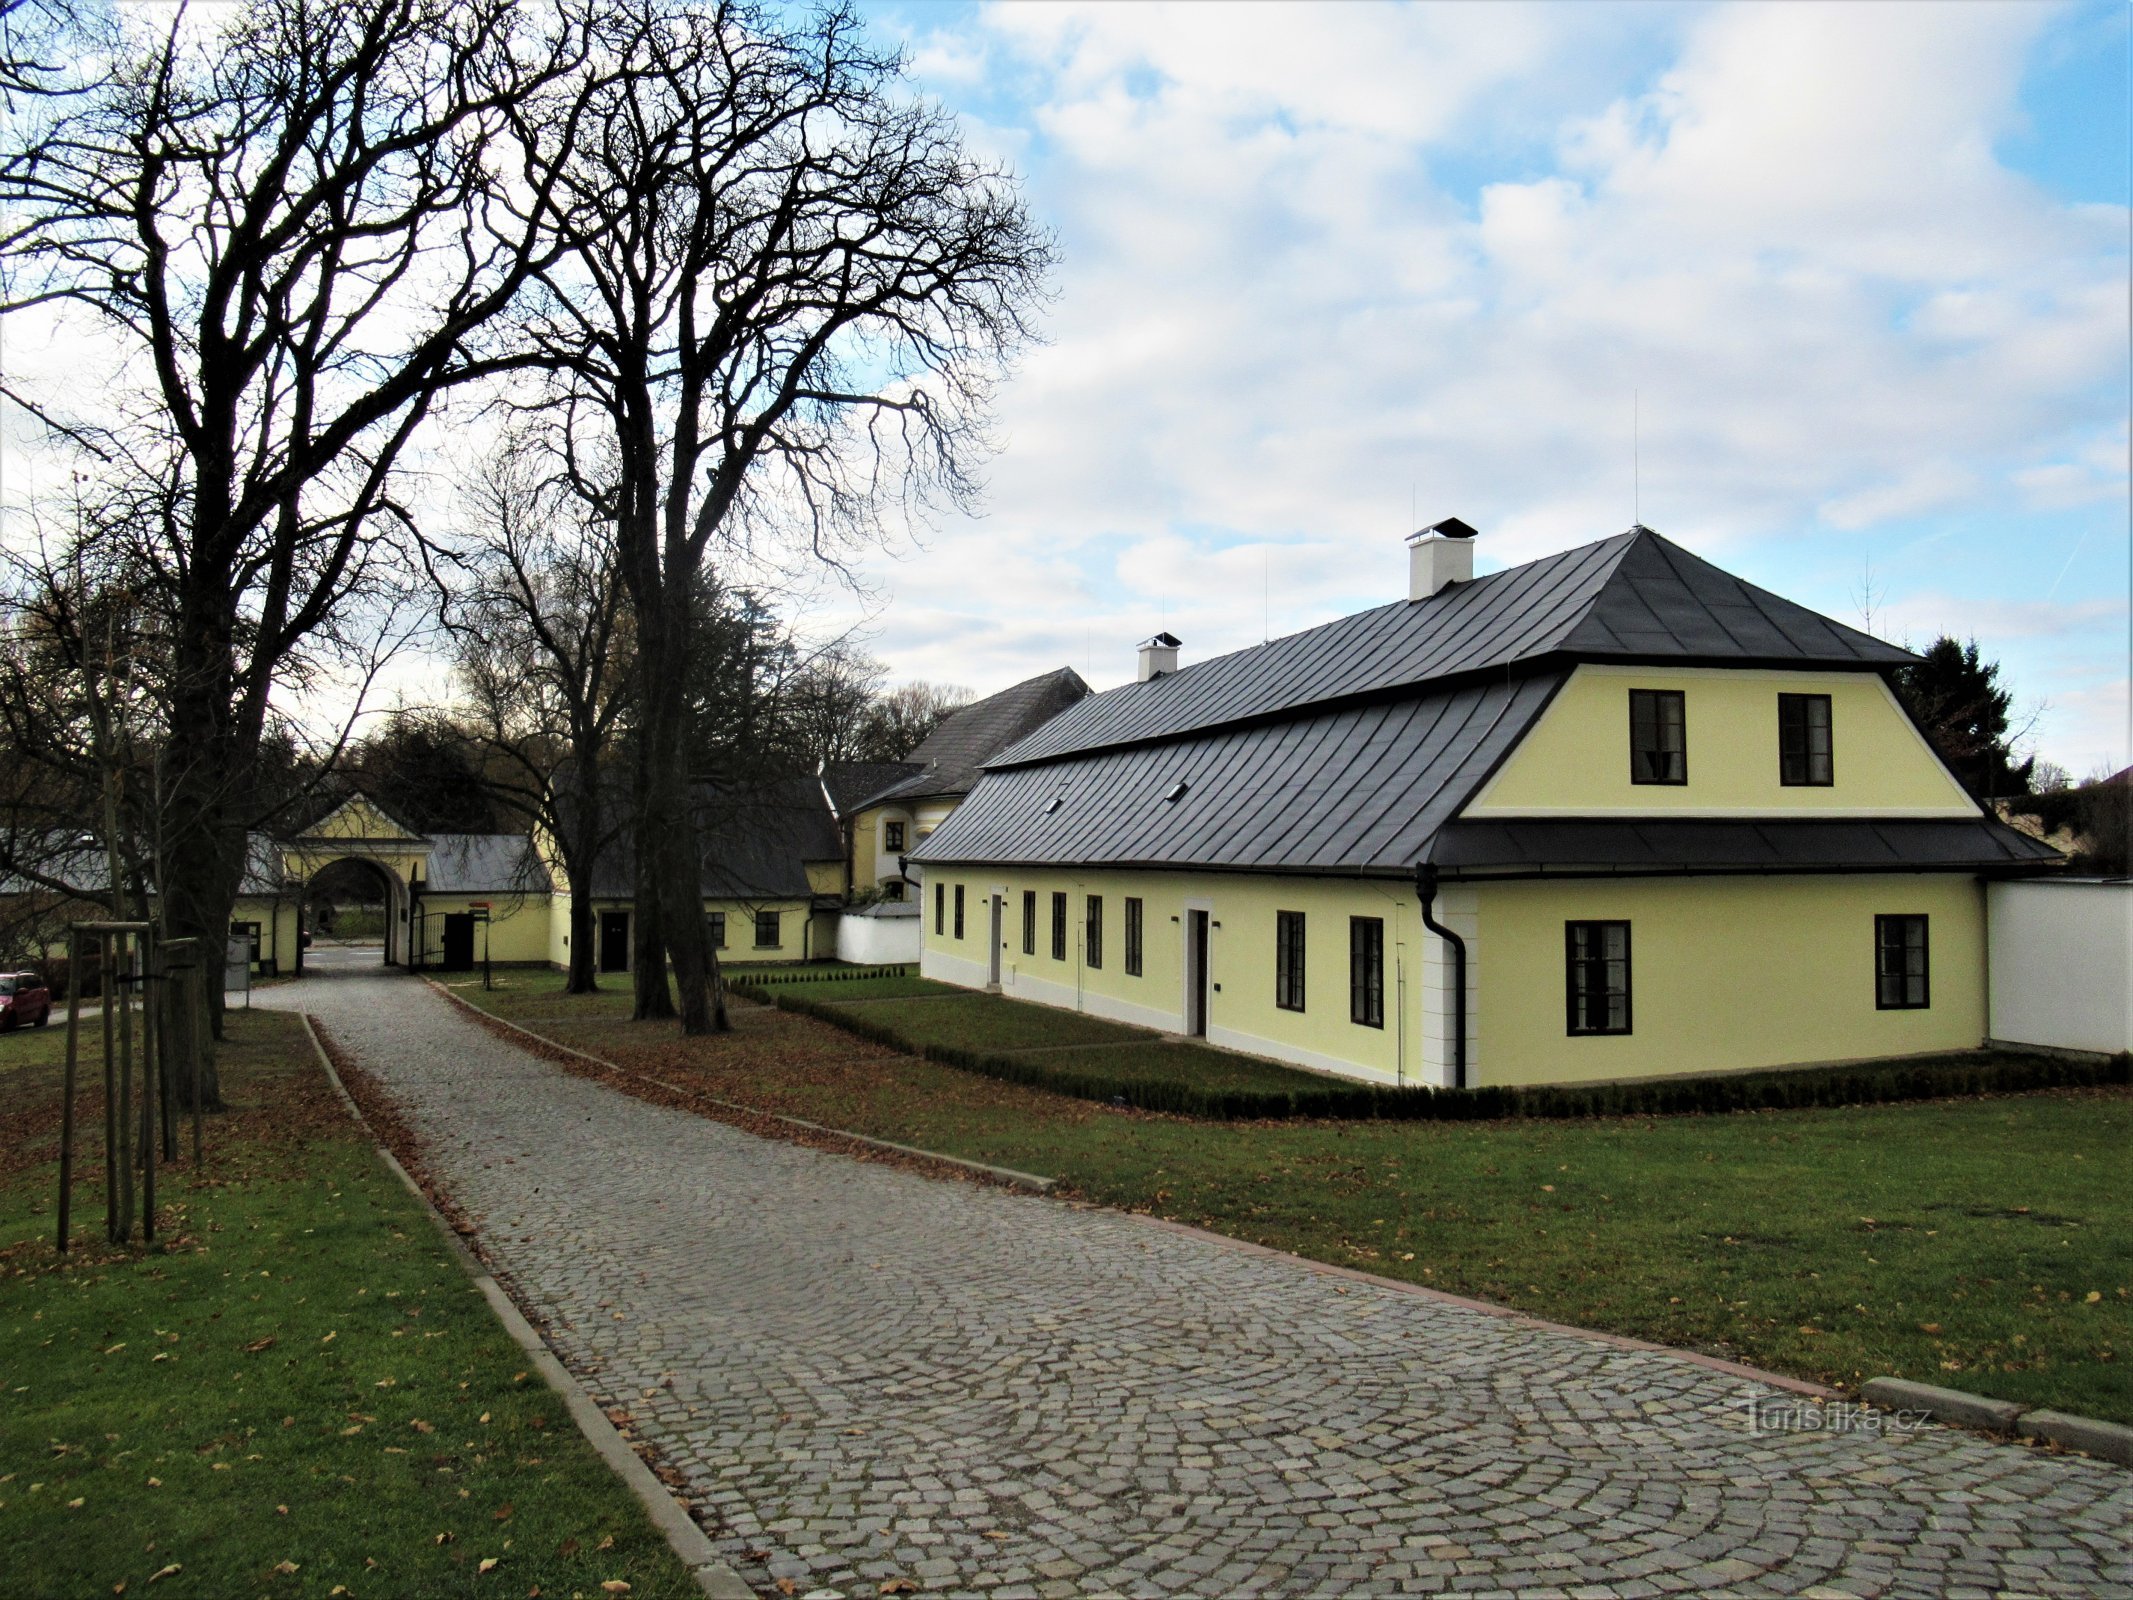 Žďár nad Sázavou - gartnerens hus nær slottet